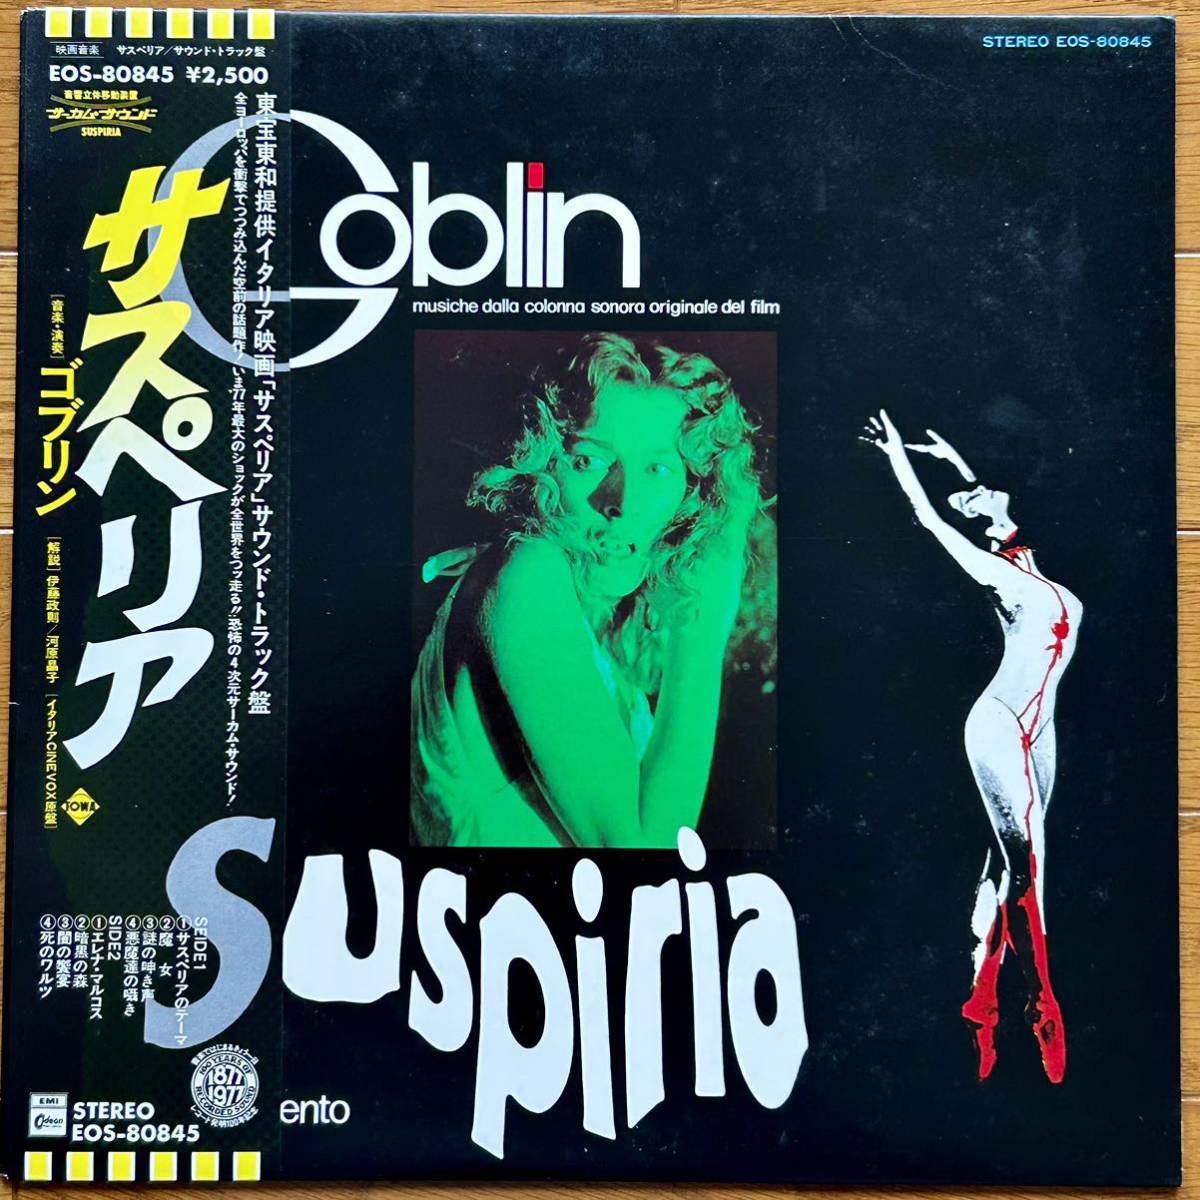 Goblin(ゴブリン)「Suspiria(サスペリア)」 LP(12インチ)/EMI Odeon(EOS-80845)/ロック_画像1